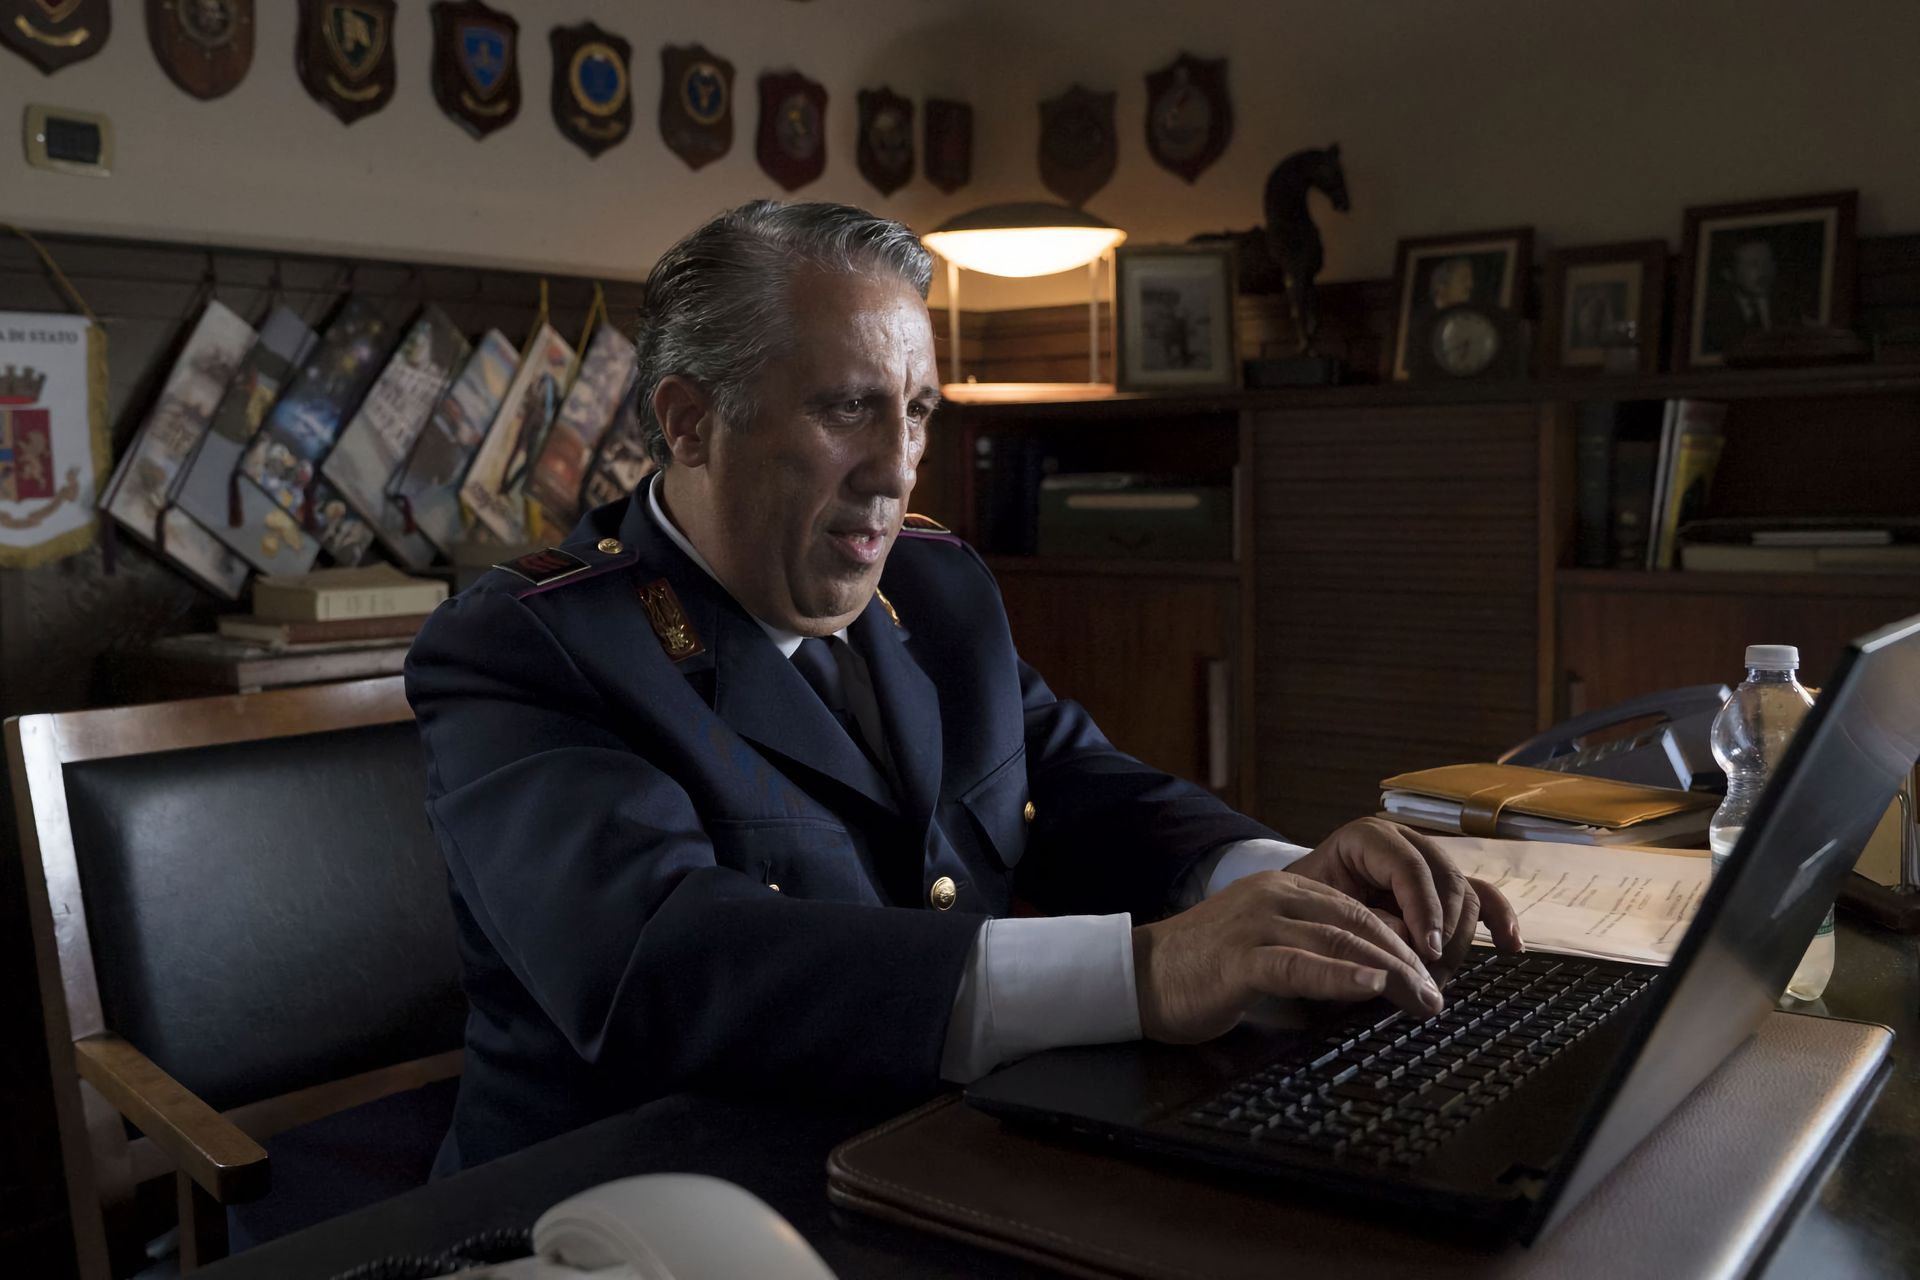 Agent Catarella telesarjas "Inspektor Montalbano" on ainus politseinik, kes on harjunud arvutit kasutama